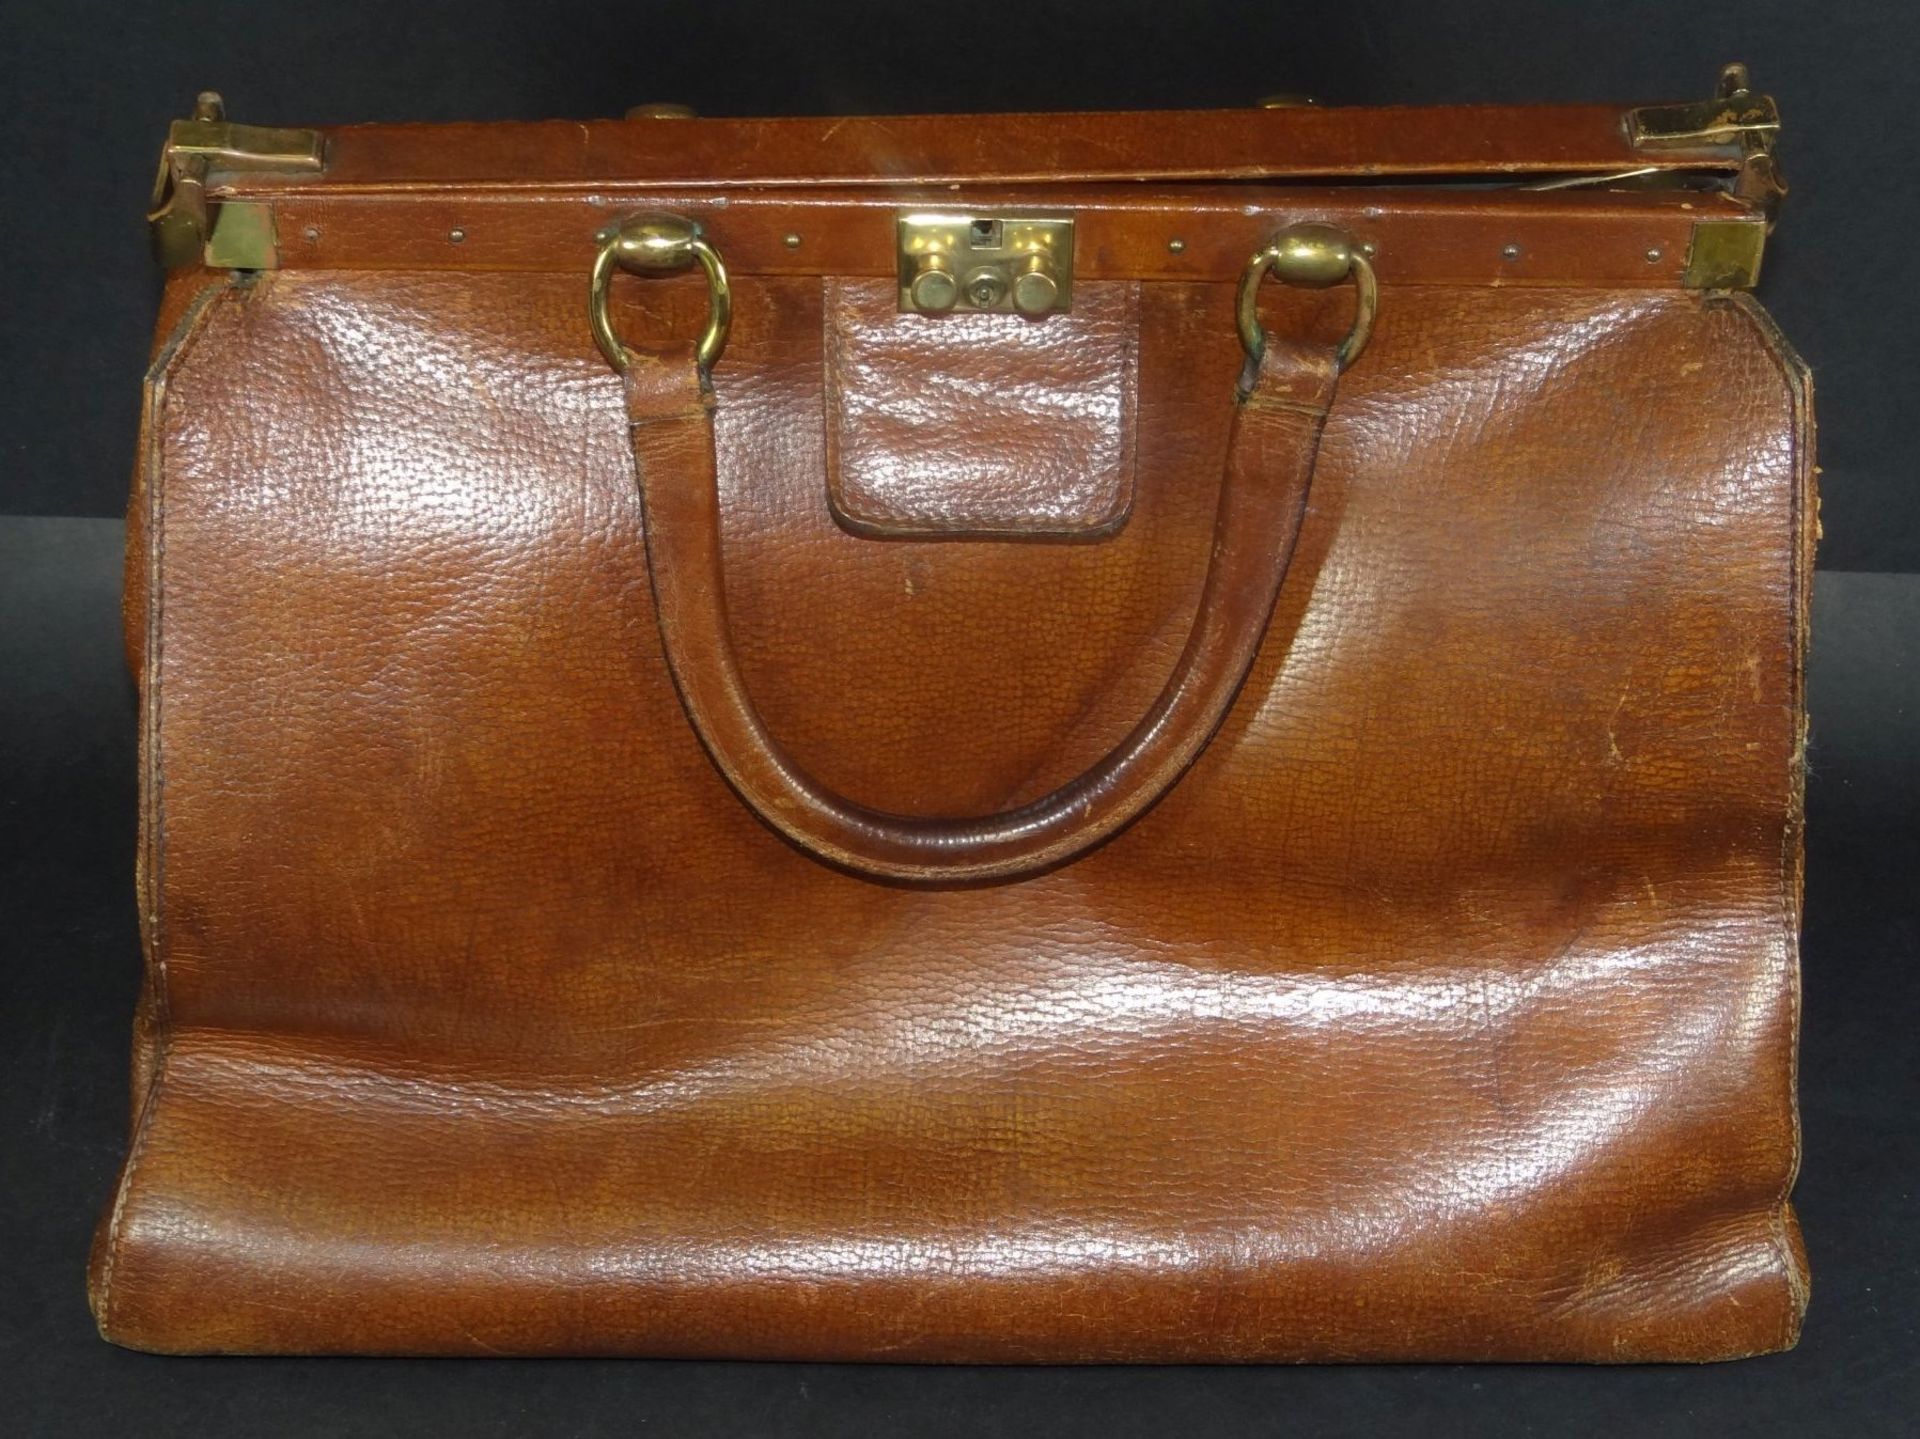 gr. Leder-Handtasche (Arzttasche?) mit Messingbeschläger, Alters-u. Gebrauchsspuren, H-28 cm, B-38